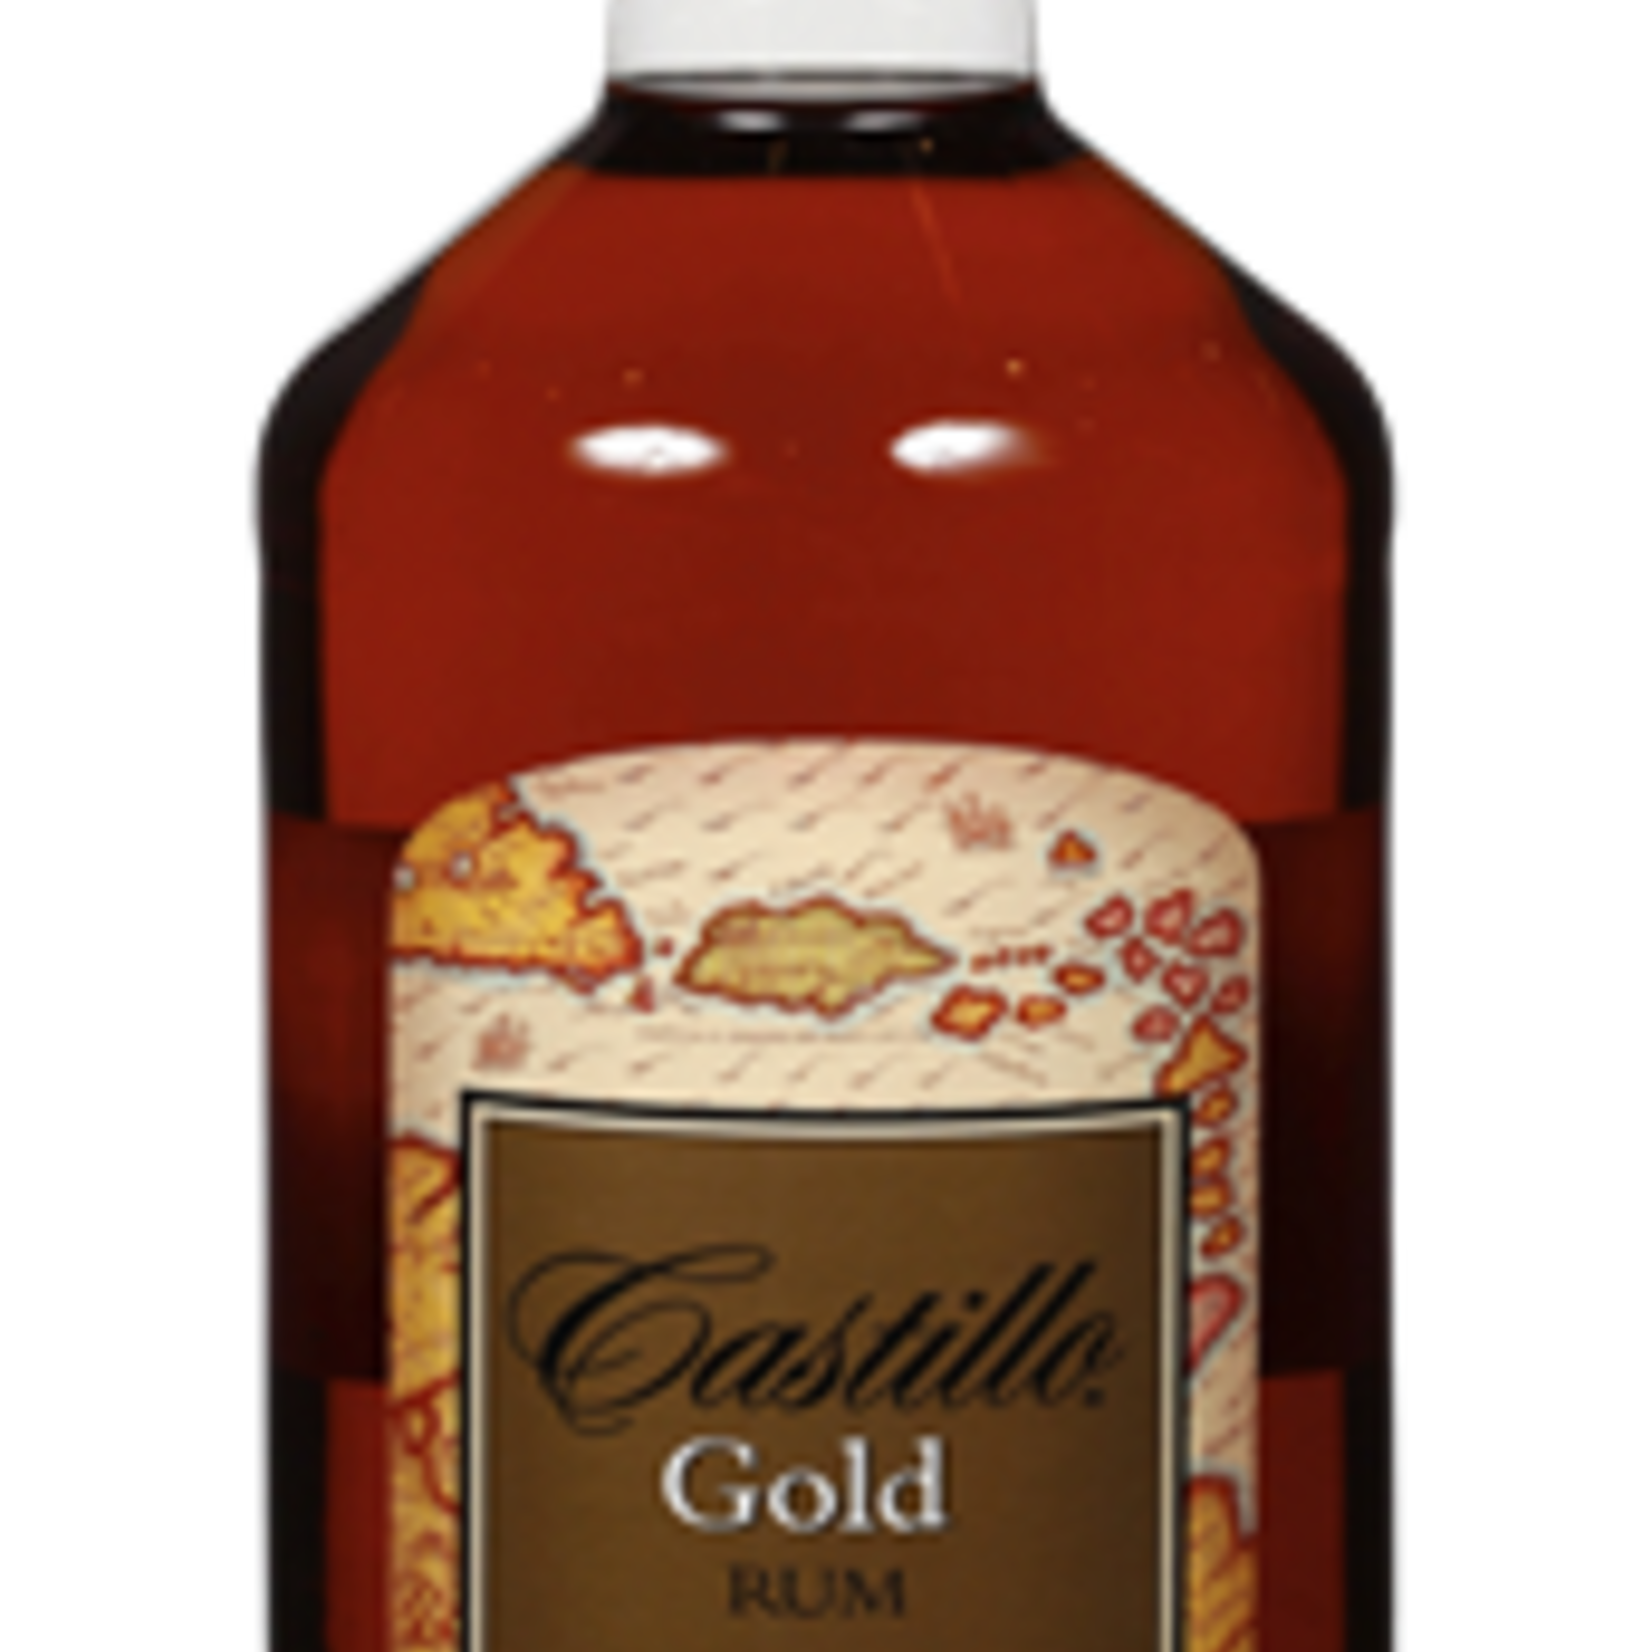 Castillo Castillo Gold Rum